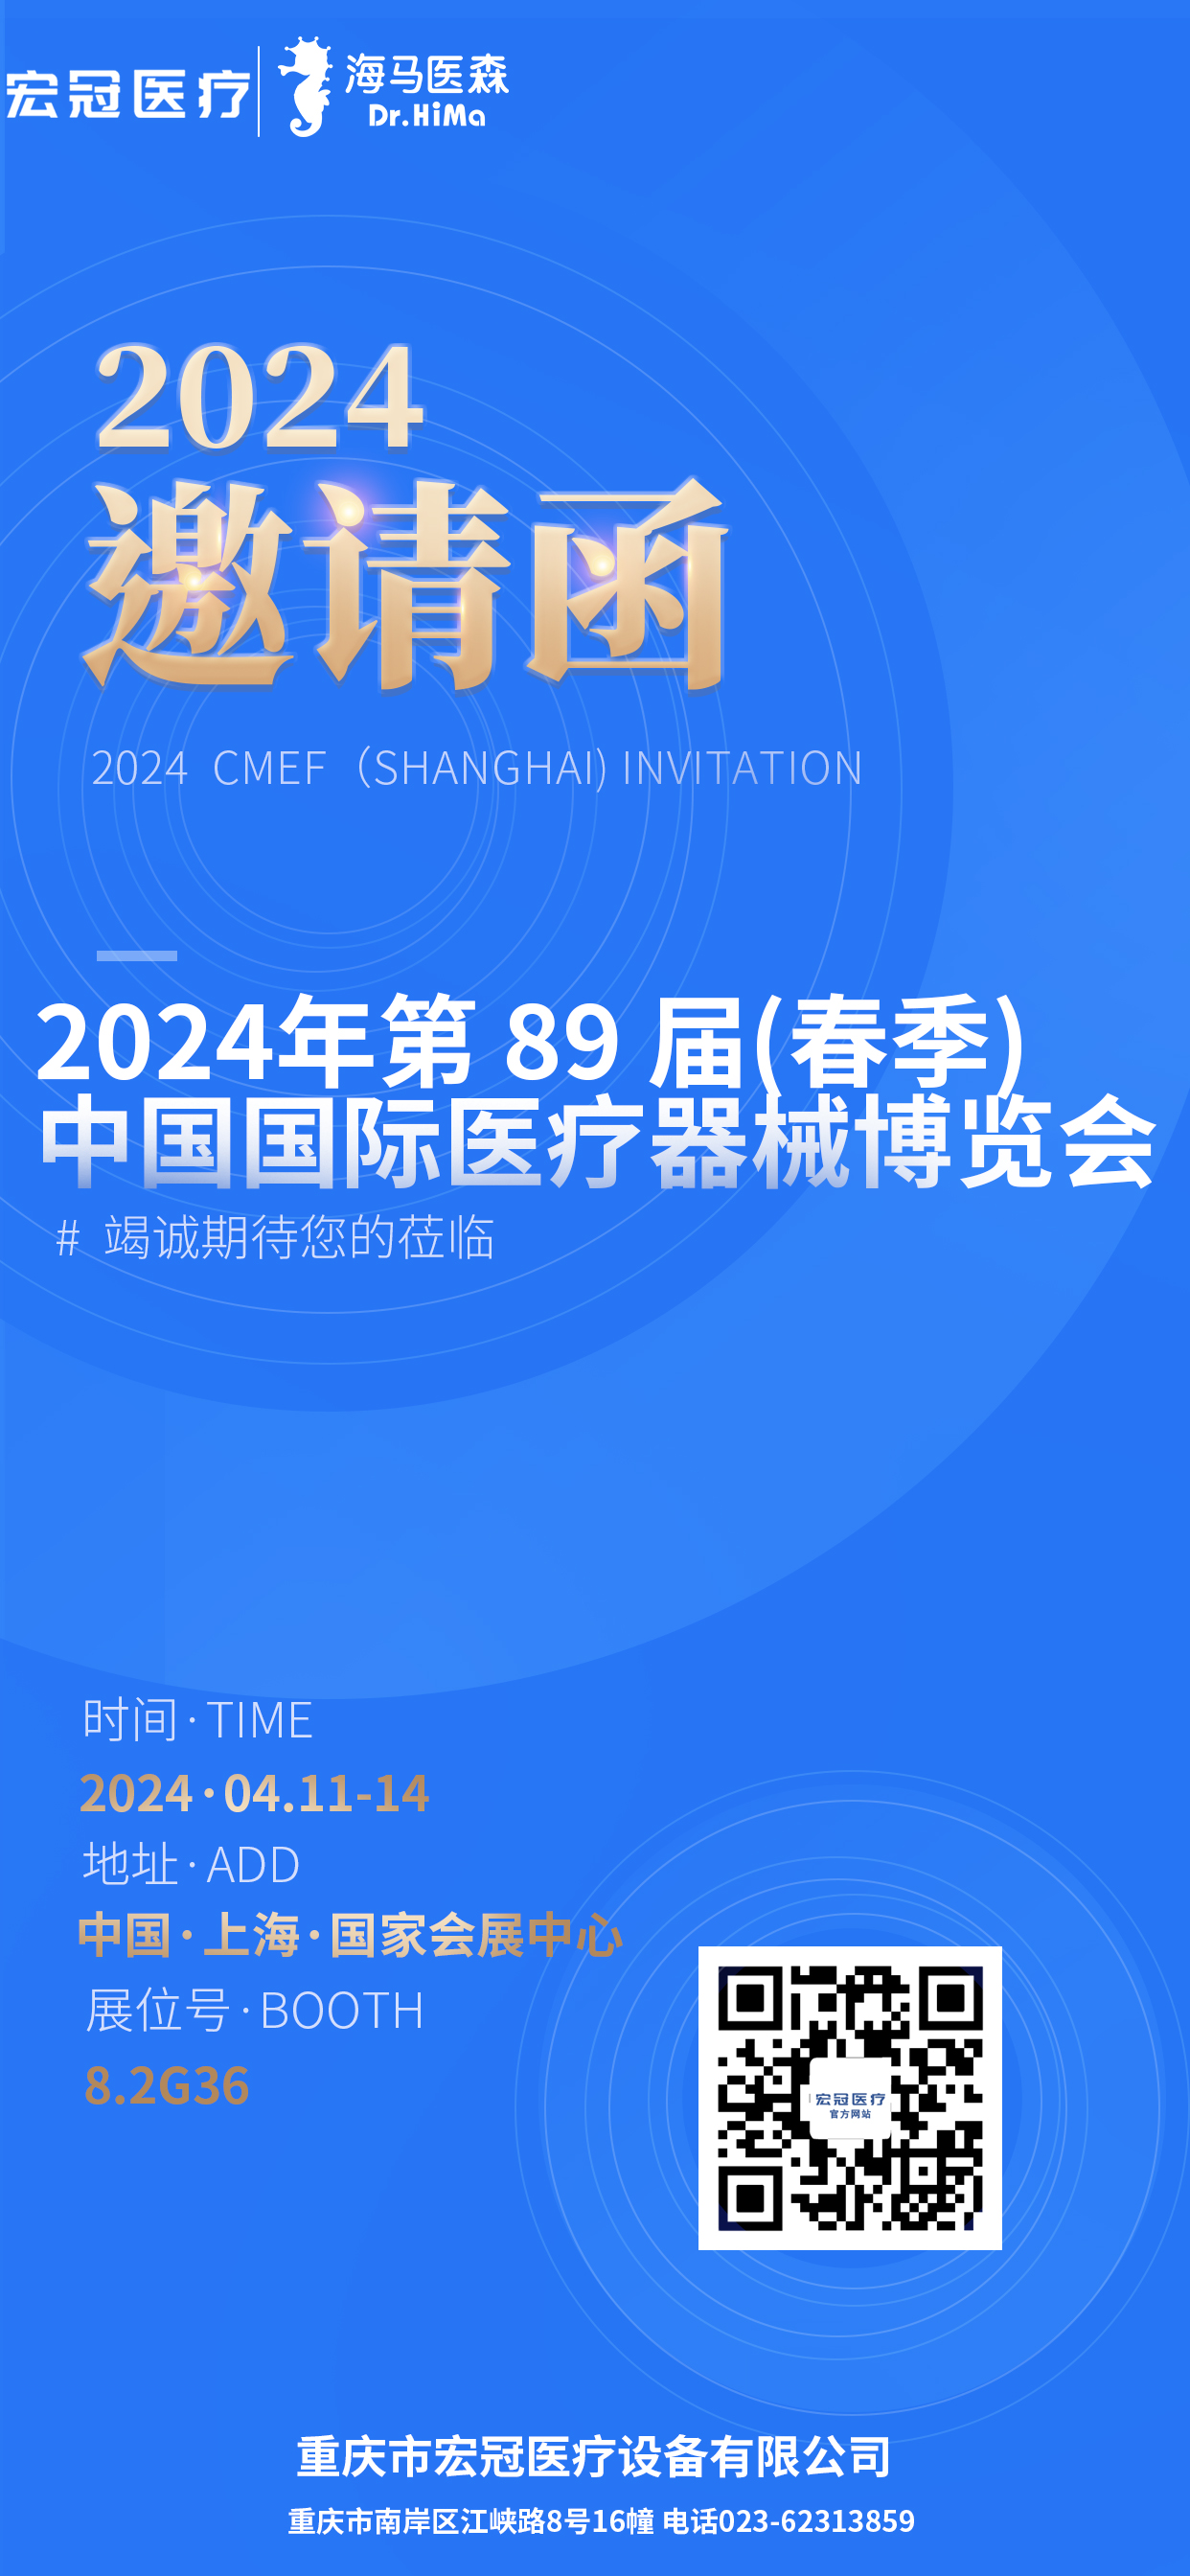 Imbitasyon para sa 2024 CMEF（Shanghai)